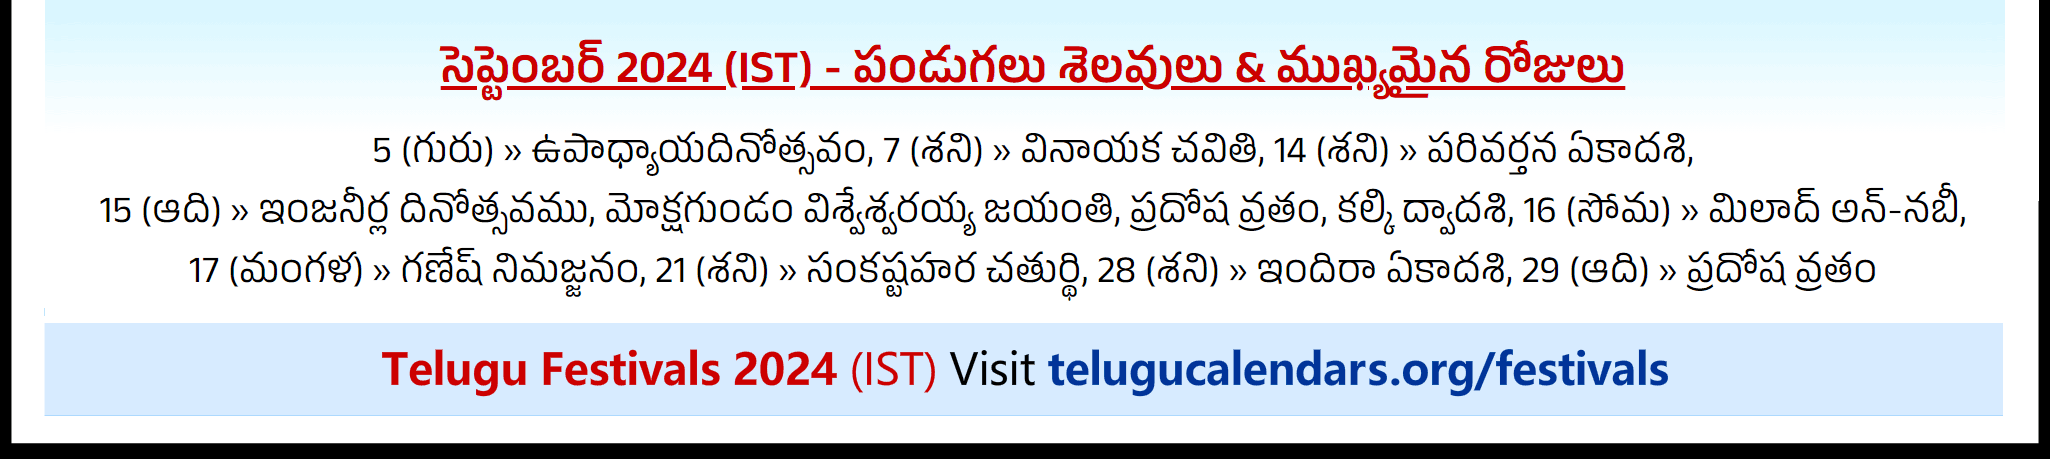 Telugu Festivals 2024 September Chicago